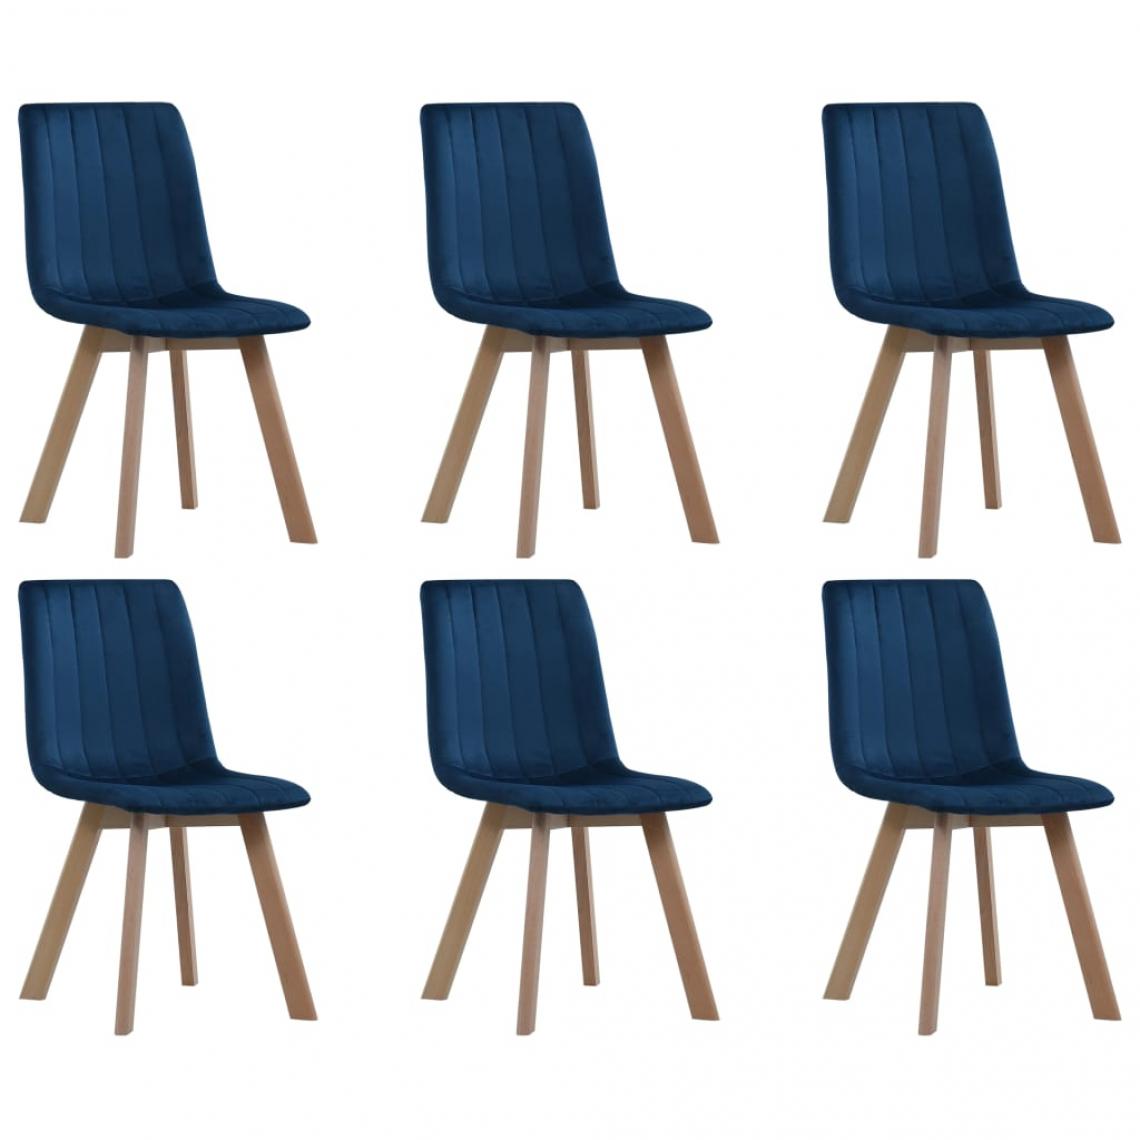 Decoshop26 - Lot de 6 chaises de salle à manger cuisine design moderne velours bleu CDS022230 - Chaises